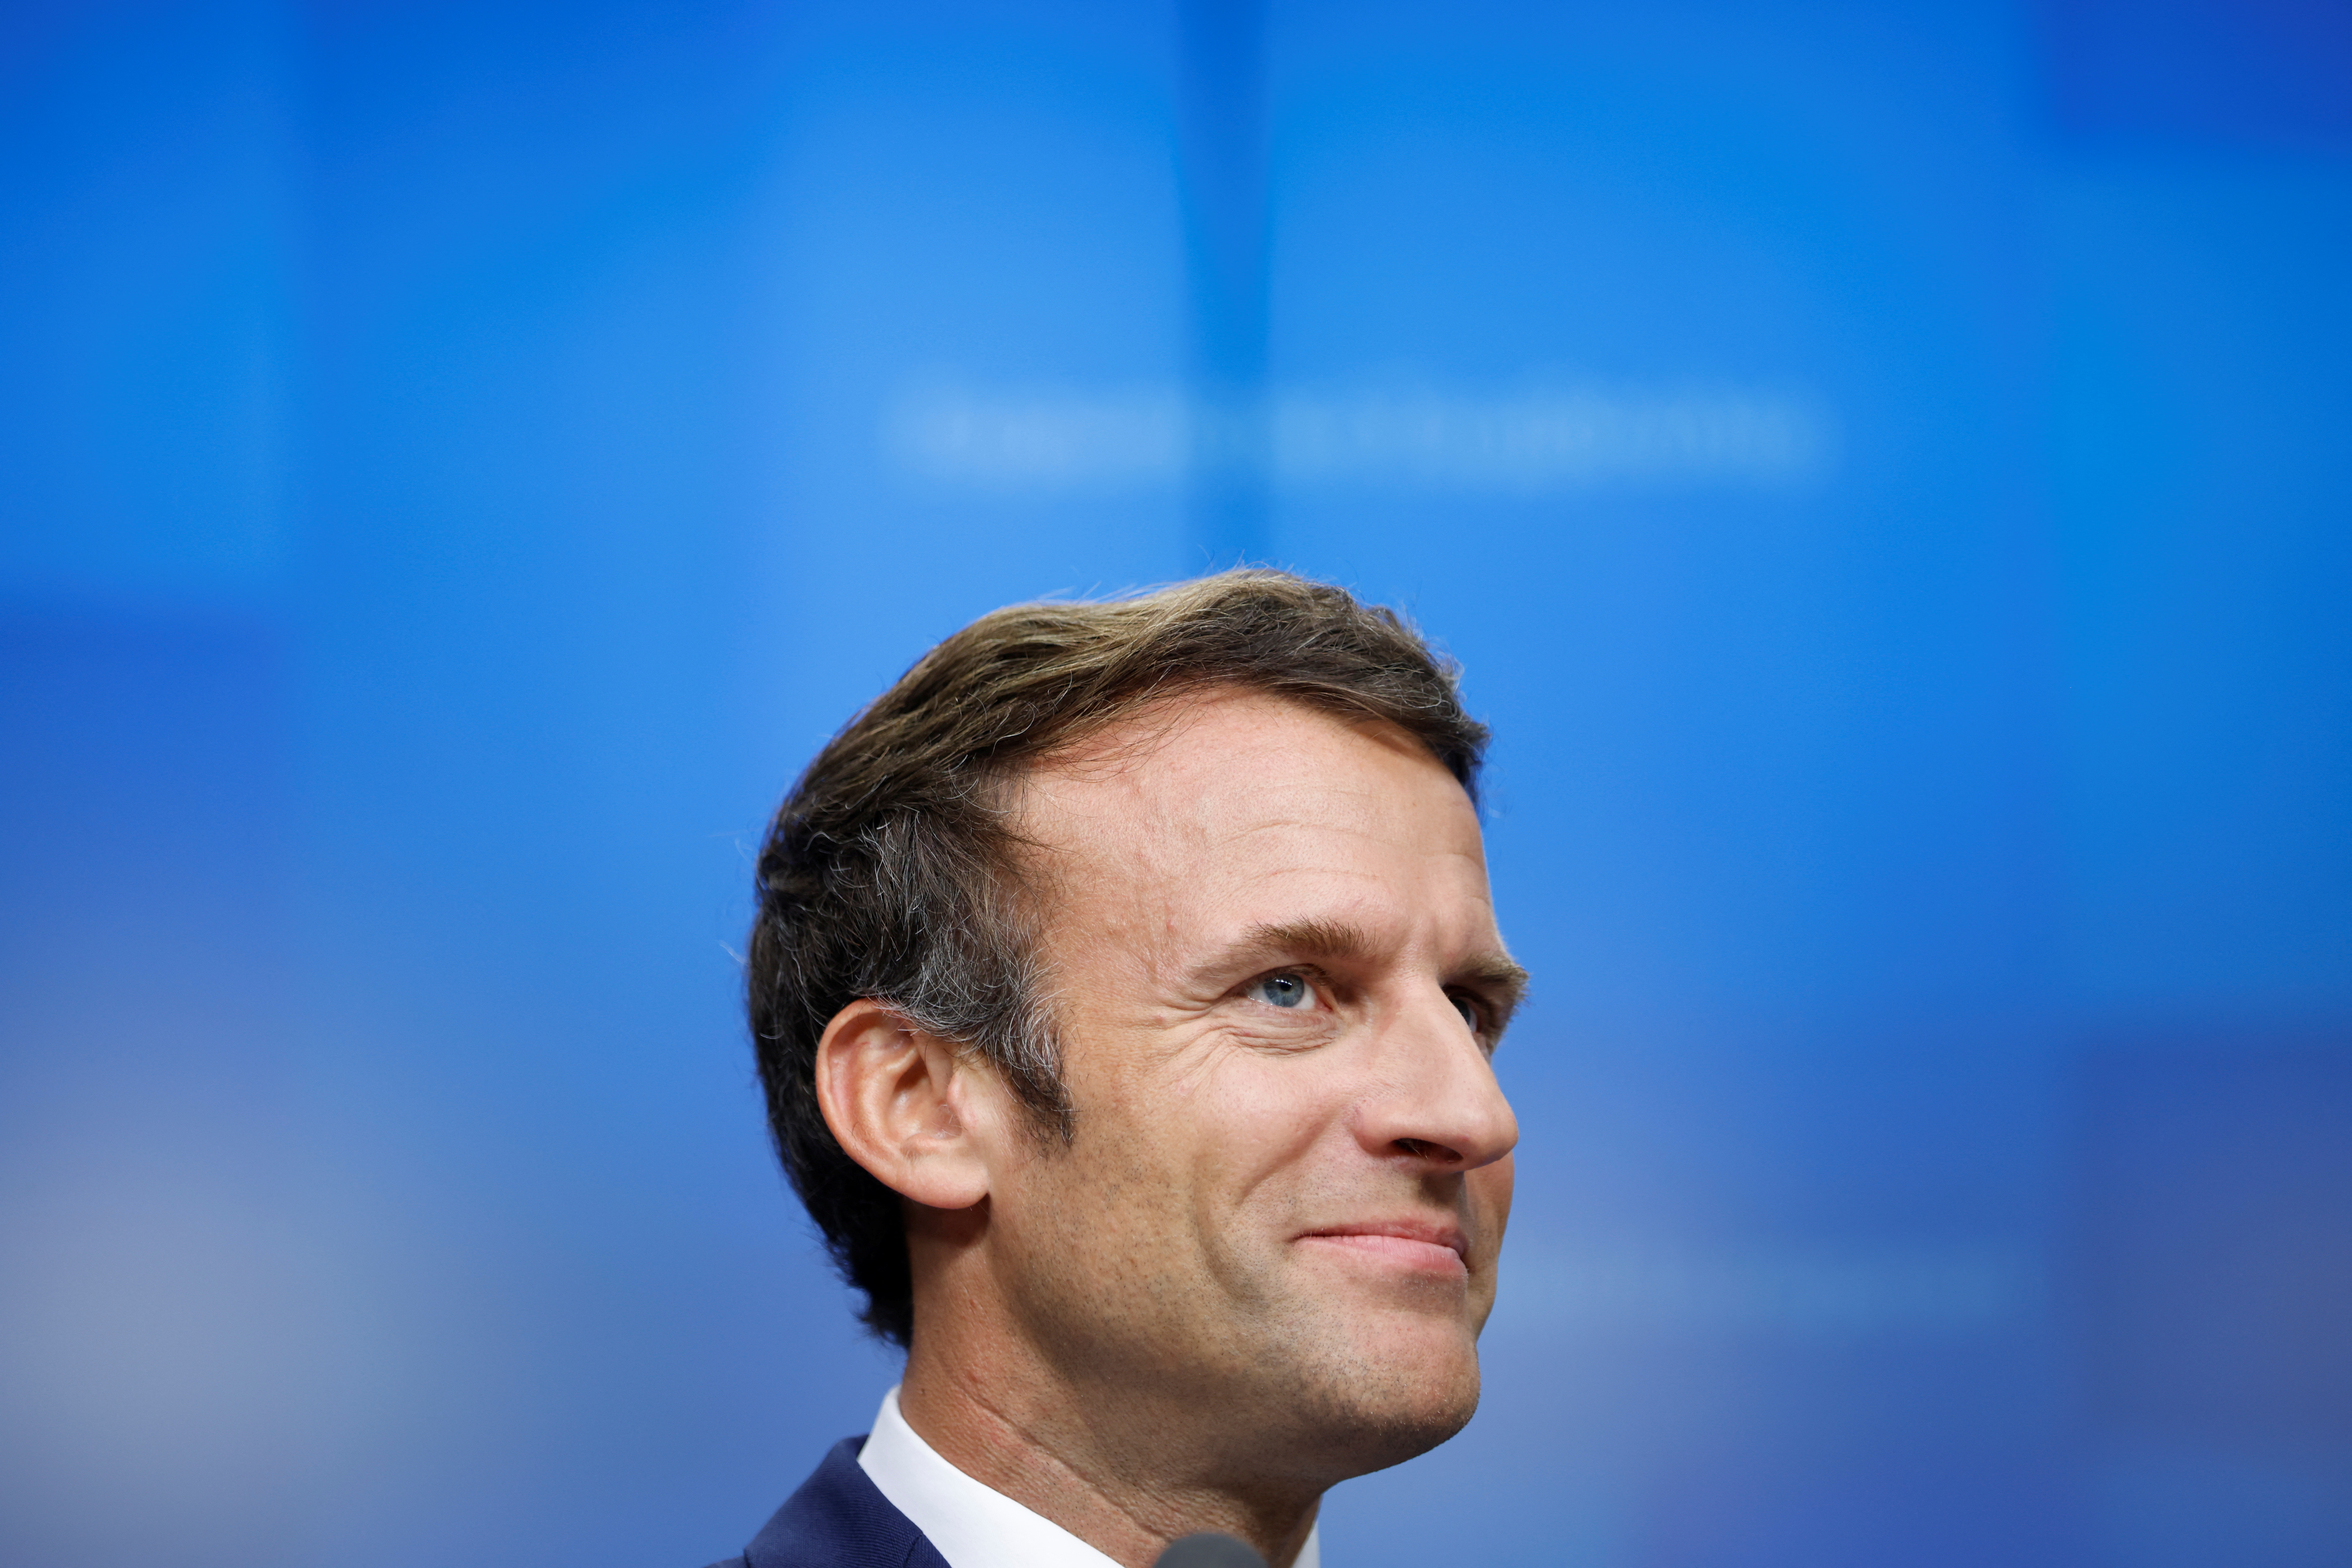 Mientras siguen las negociaciones, Macron se muestra confiado en que llegará a compromisos en la Asamblea